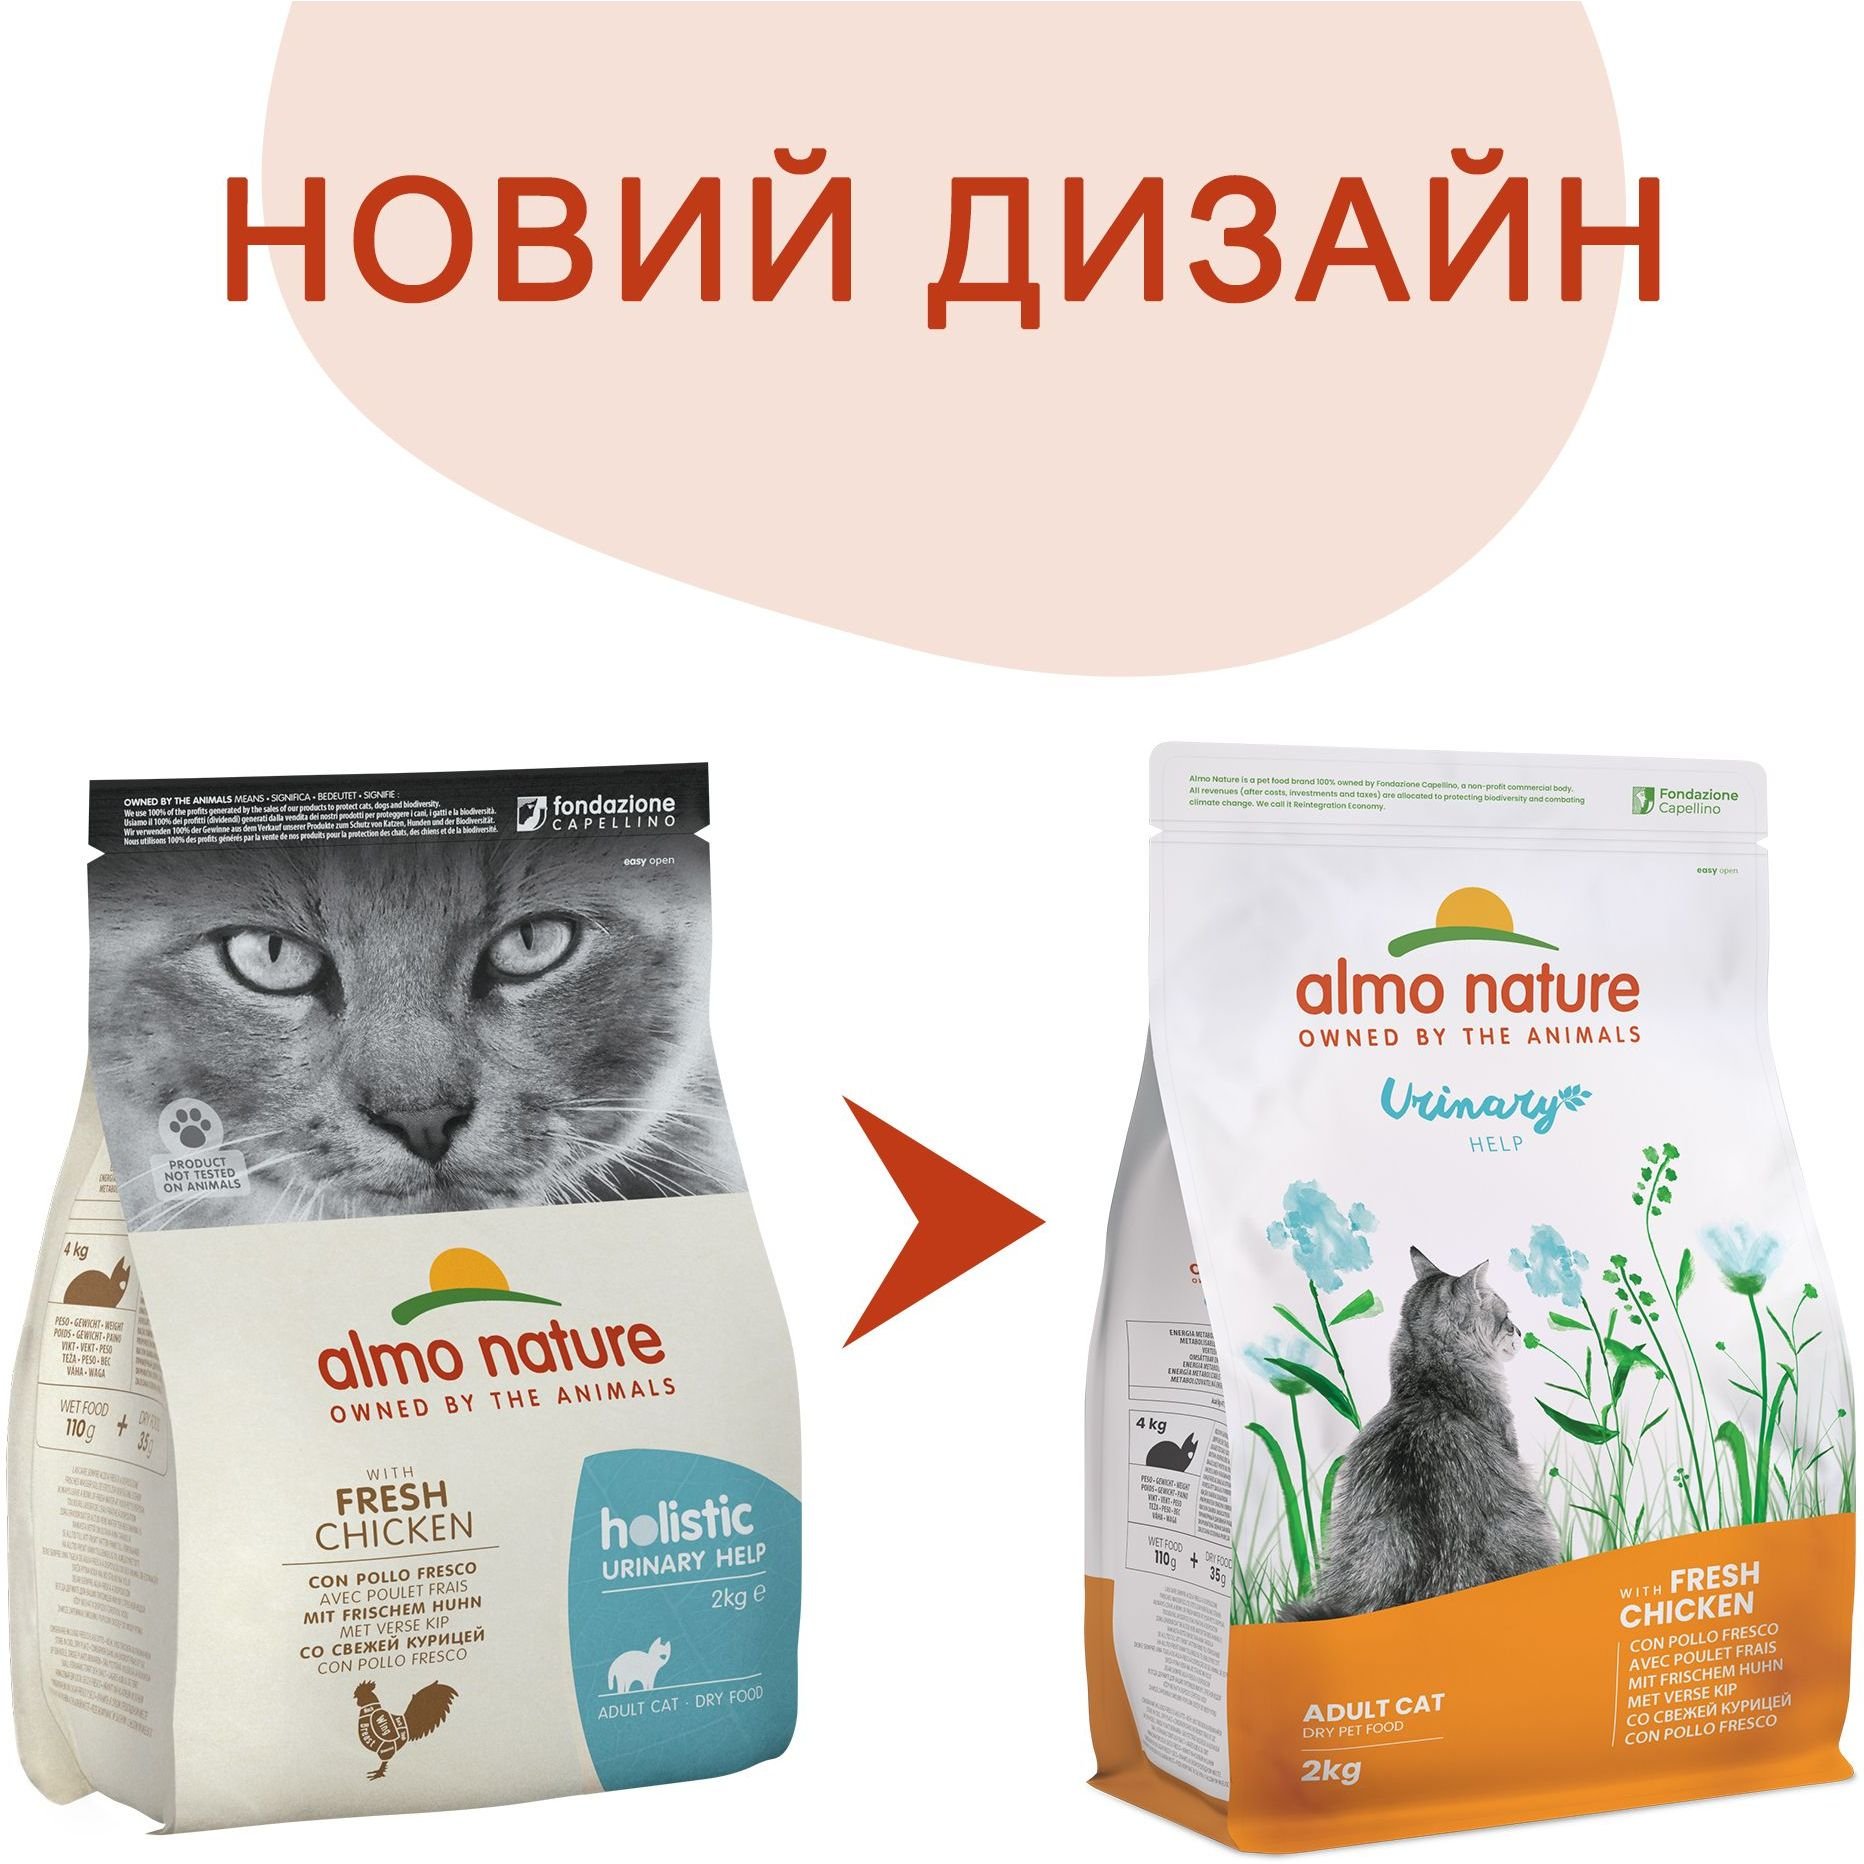 Сухой корм для взрослых кошек Almo Nature Holistic Cat для профилактики мочекаменной болезни со свежей курицей 2 кг (675) - фото 2